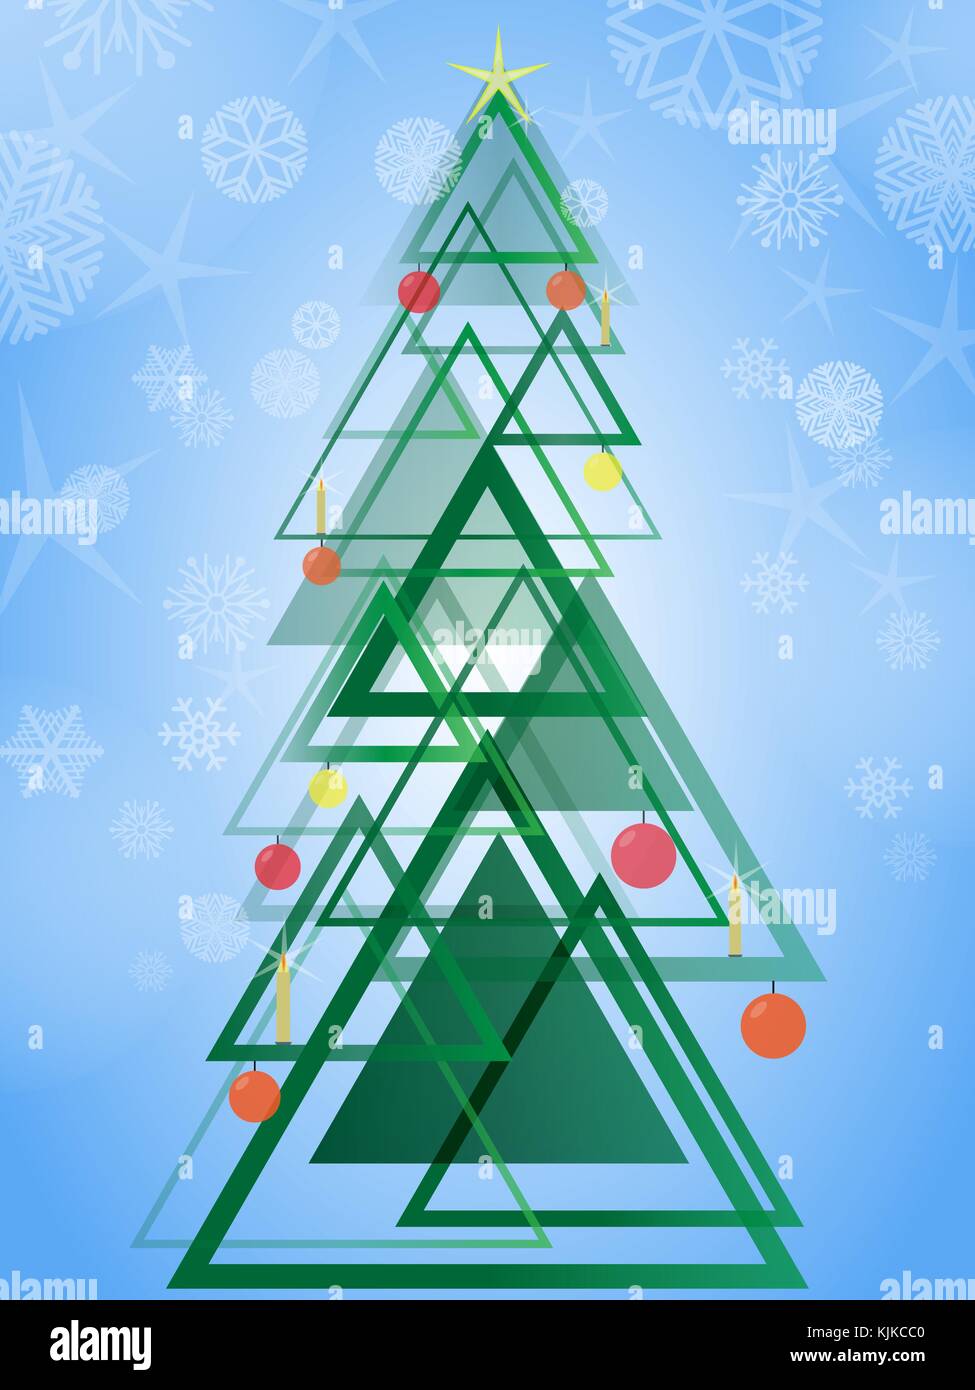 Abstrakte geometrische grüner Weihnachtsbaum. Triangle Design Pattern Weihnachtsbaum auf blauem Hintergrund mit Schneeflocken. Vector Illustration Stock Vektor